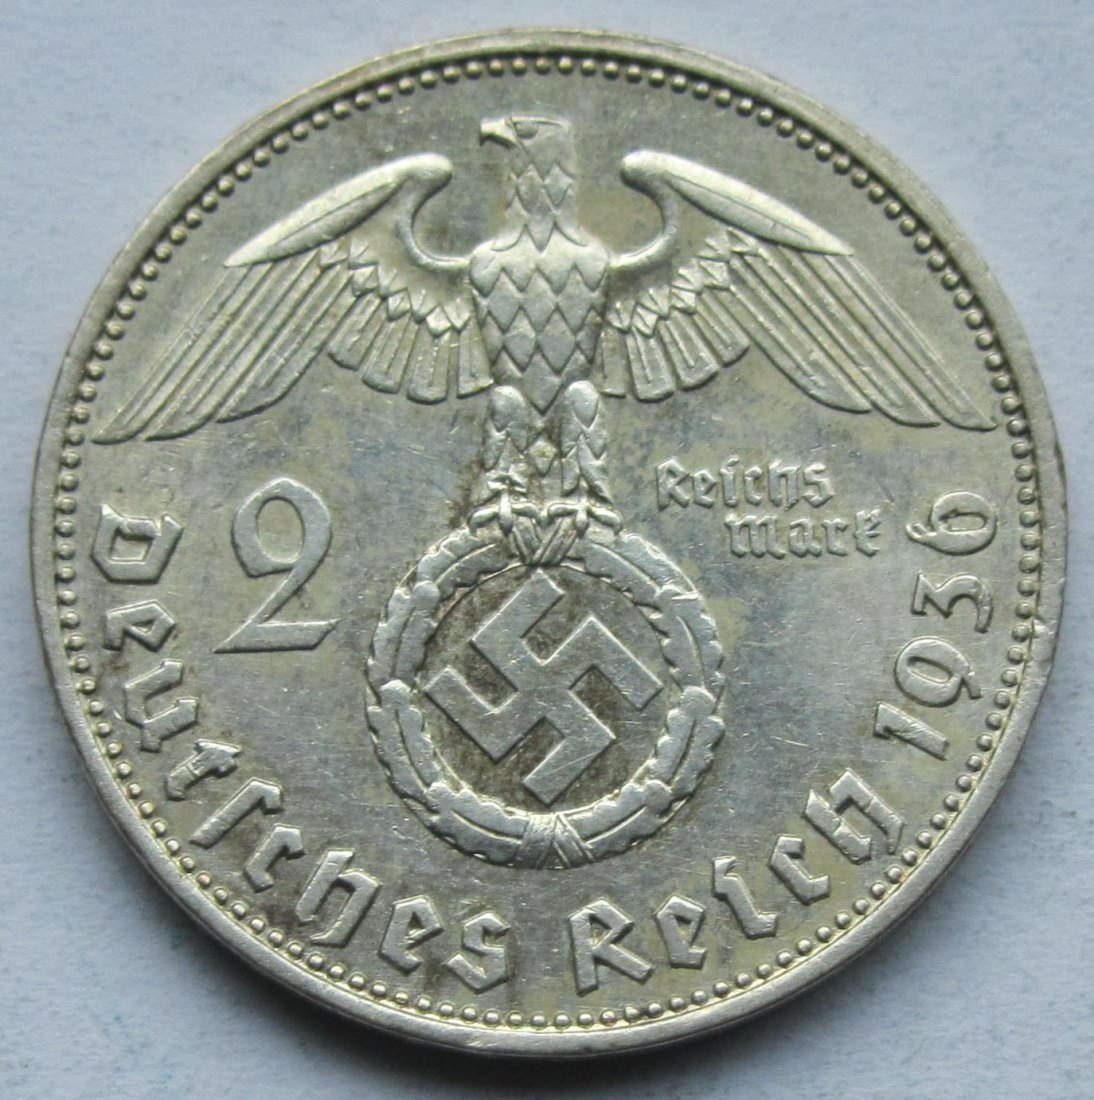  Deutsches Reich: 2 Mark 1936 E   